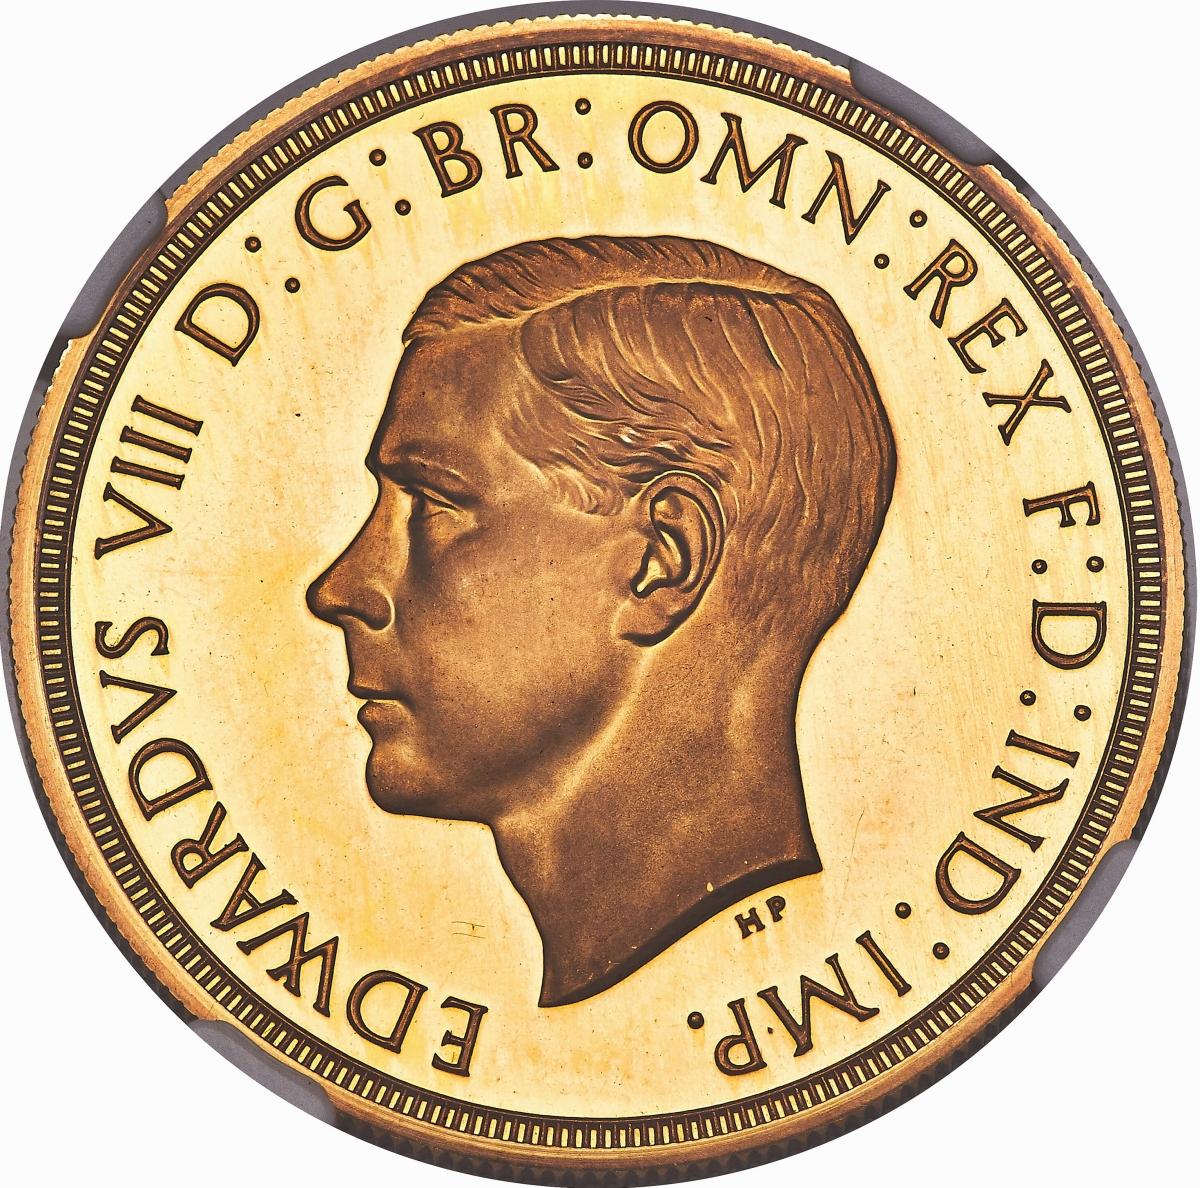 TEASER Heritage Coins